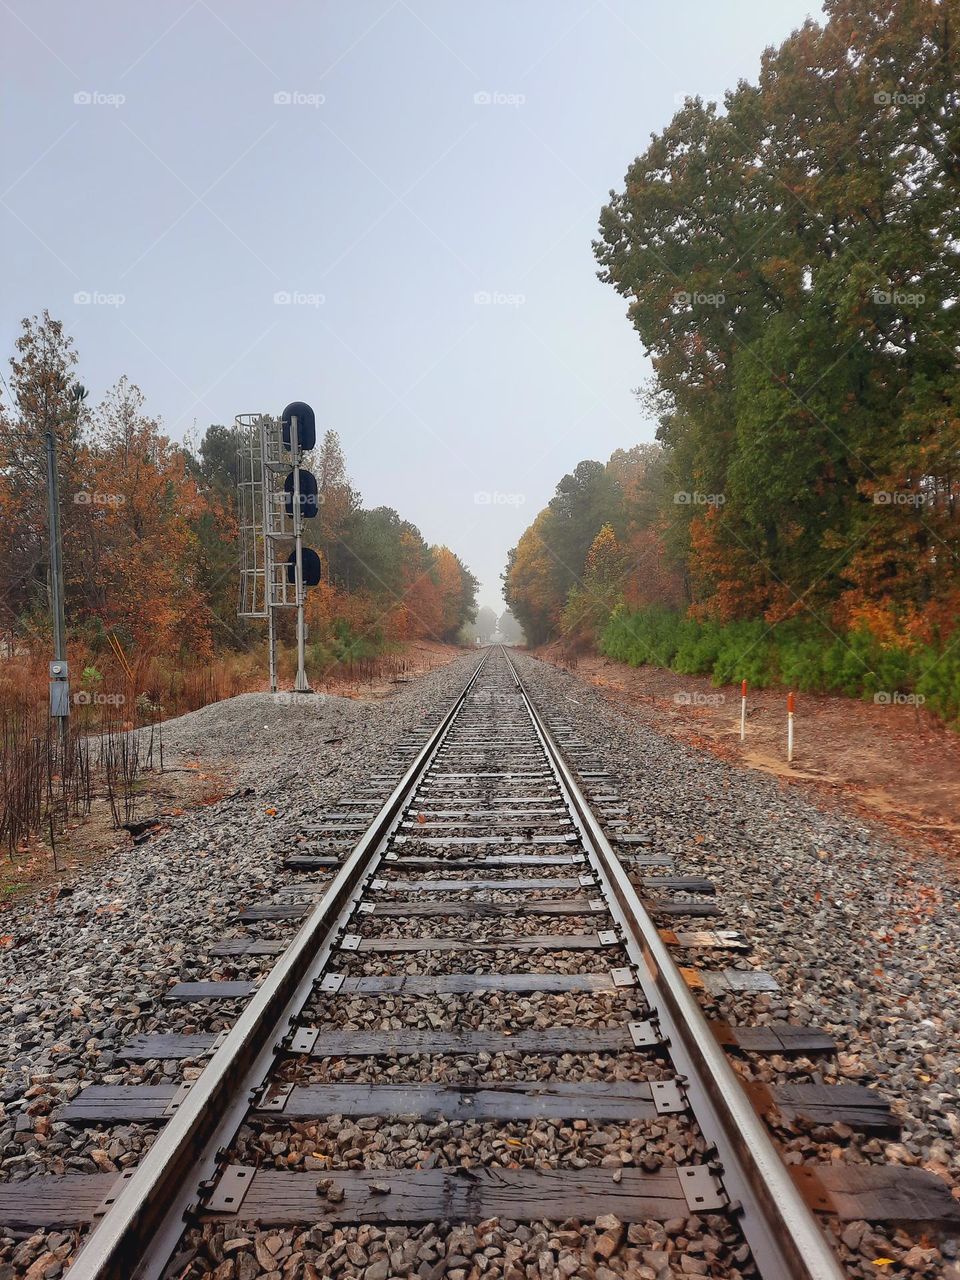 Fall on the railroad tracks